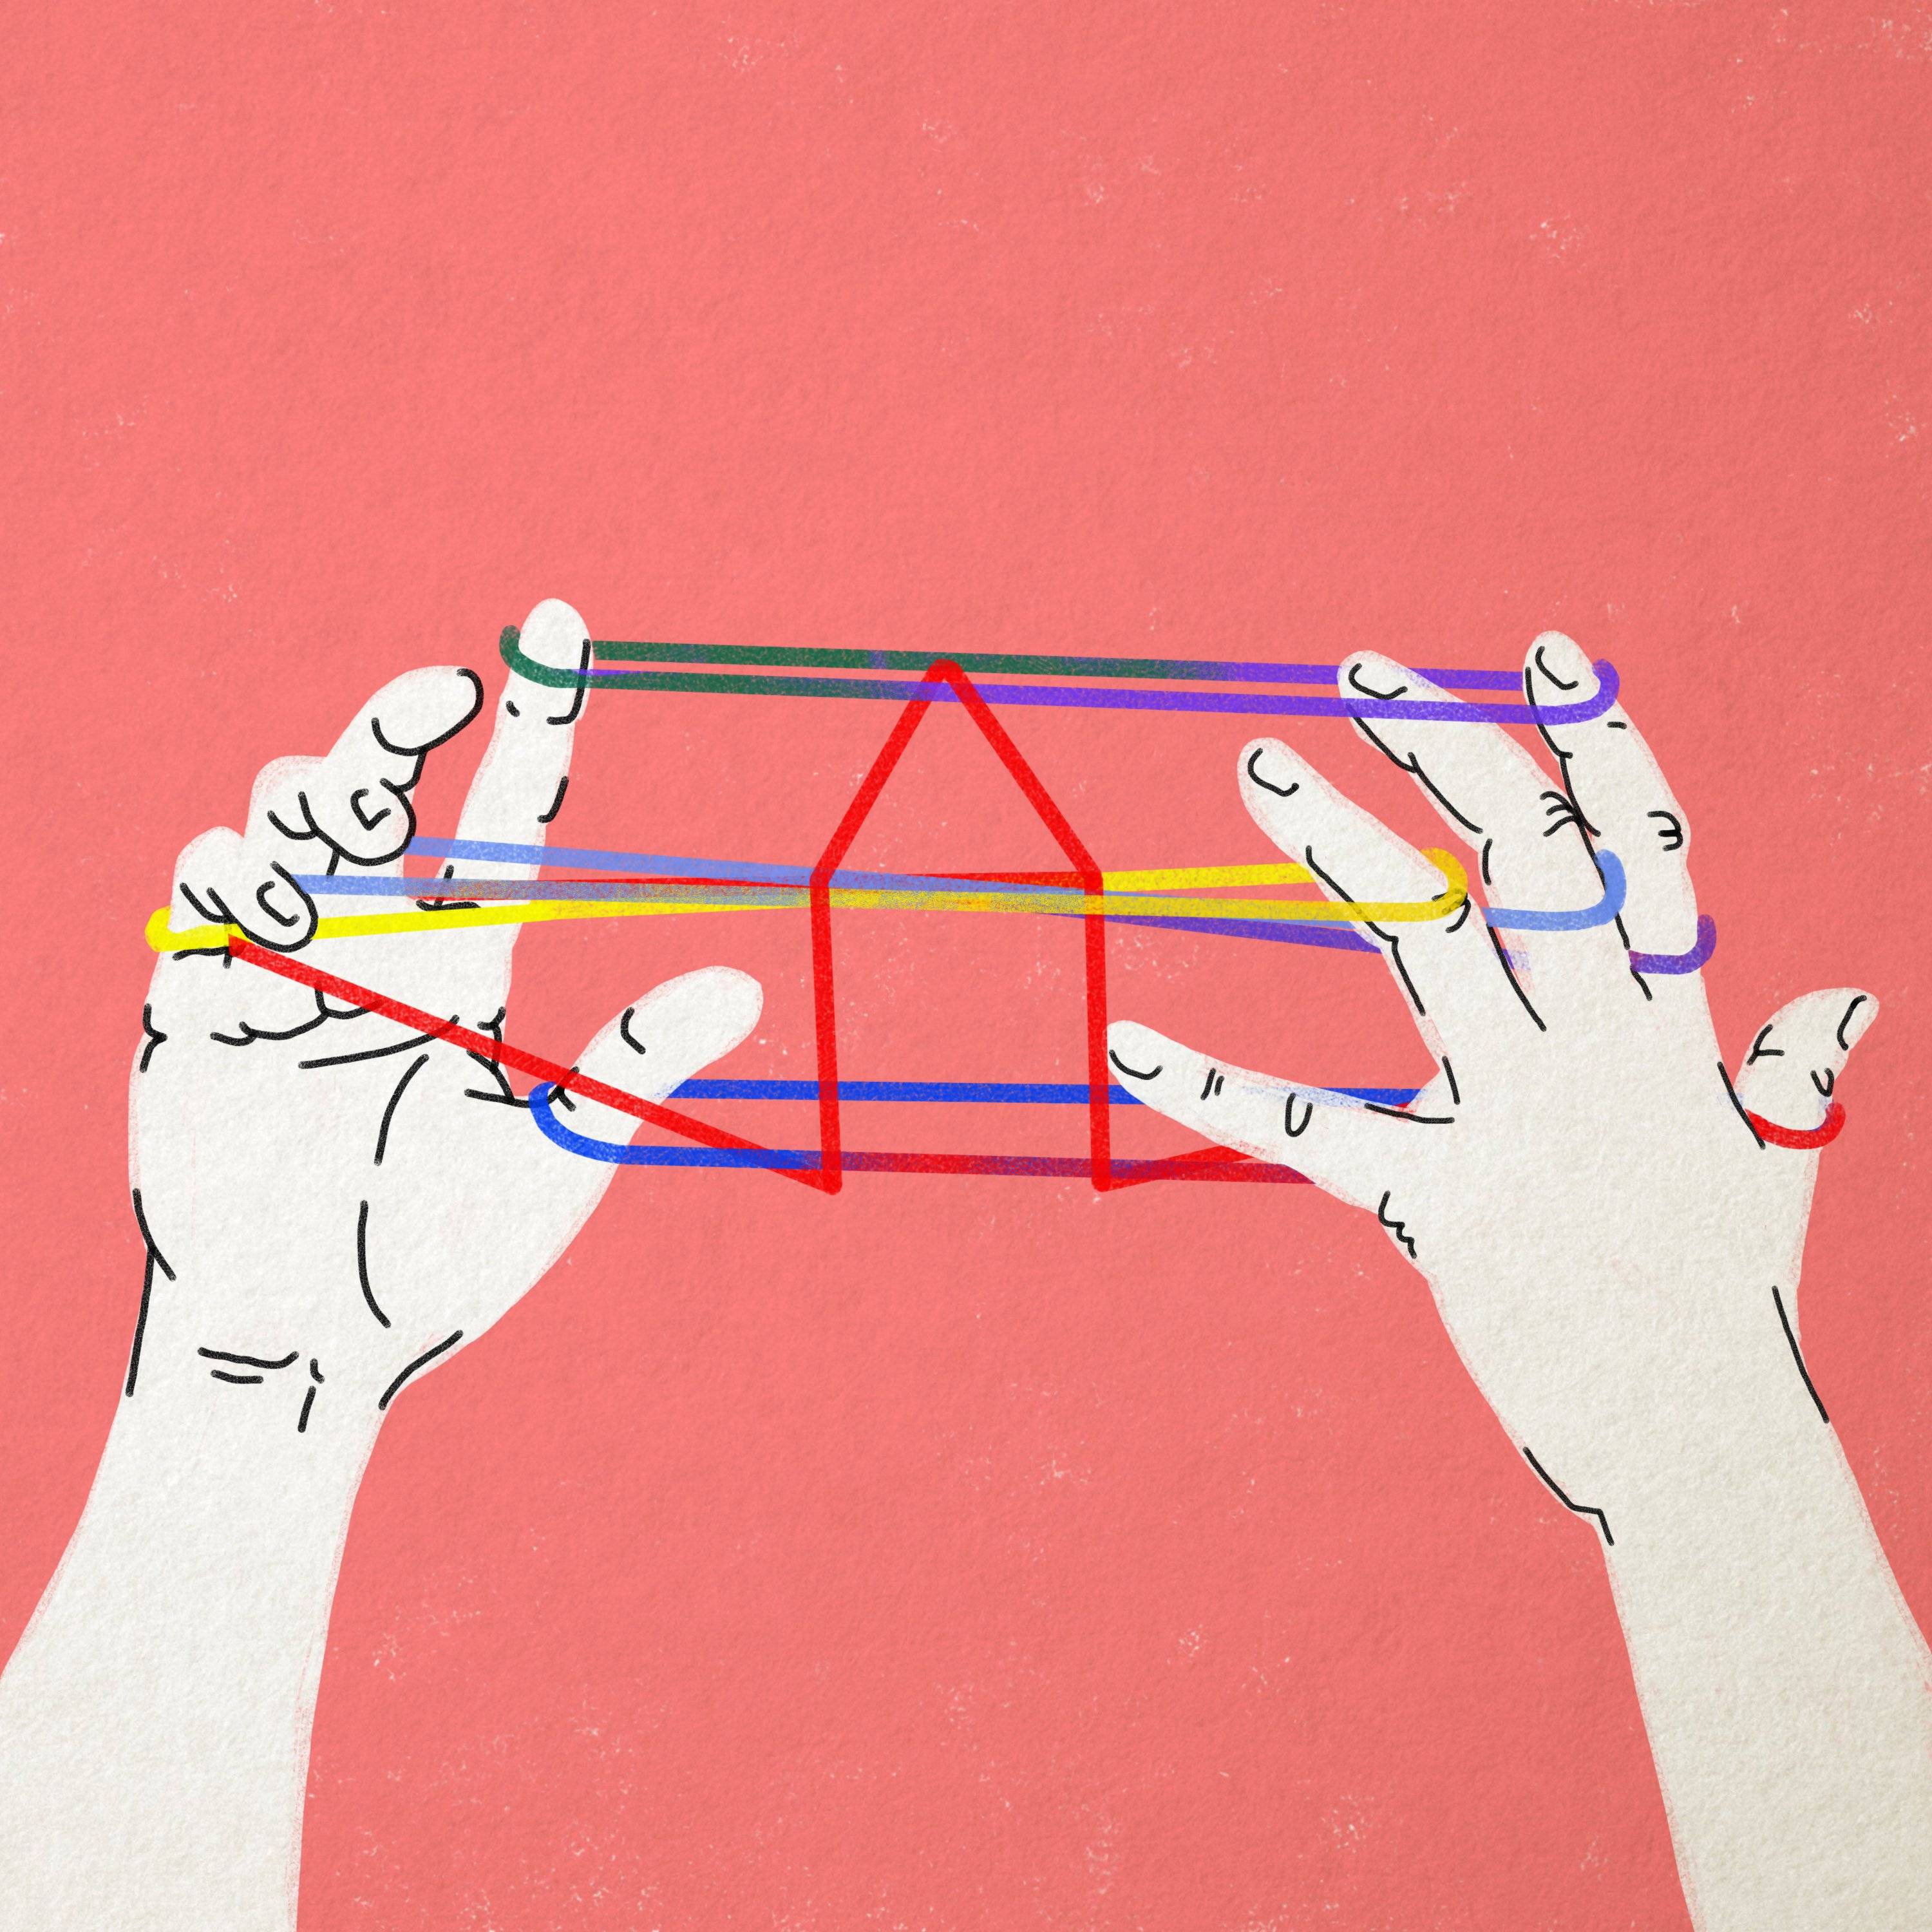 Rysunek dwóch rąk i rozciągnięte między palcami rąk kolorowe nici